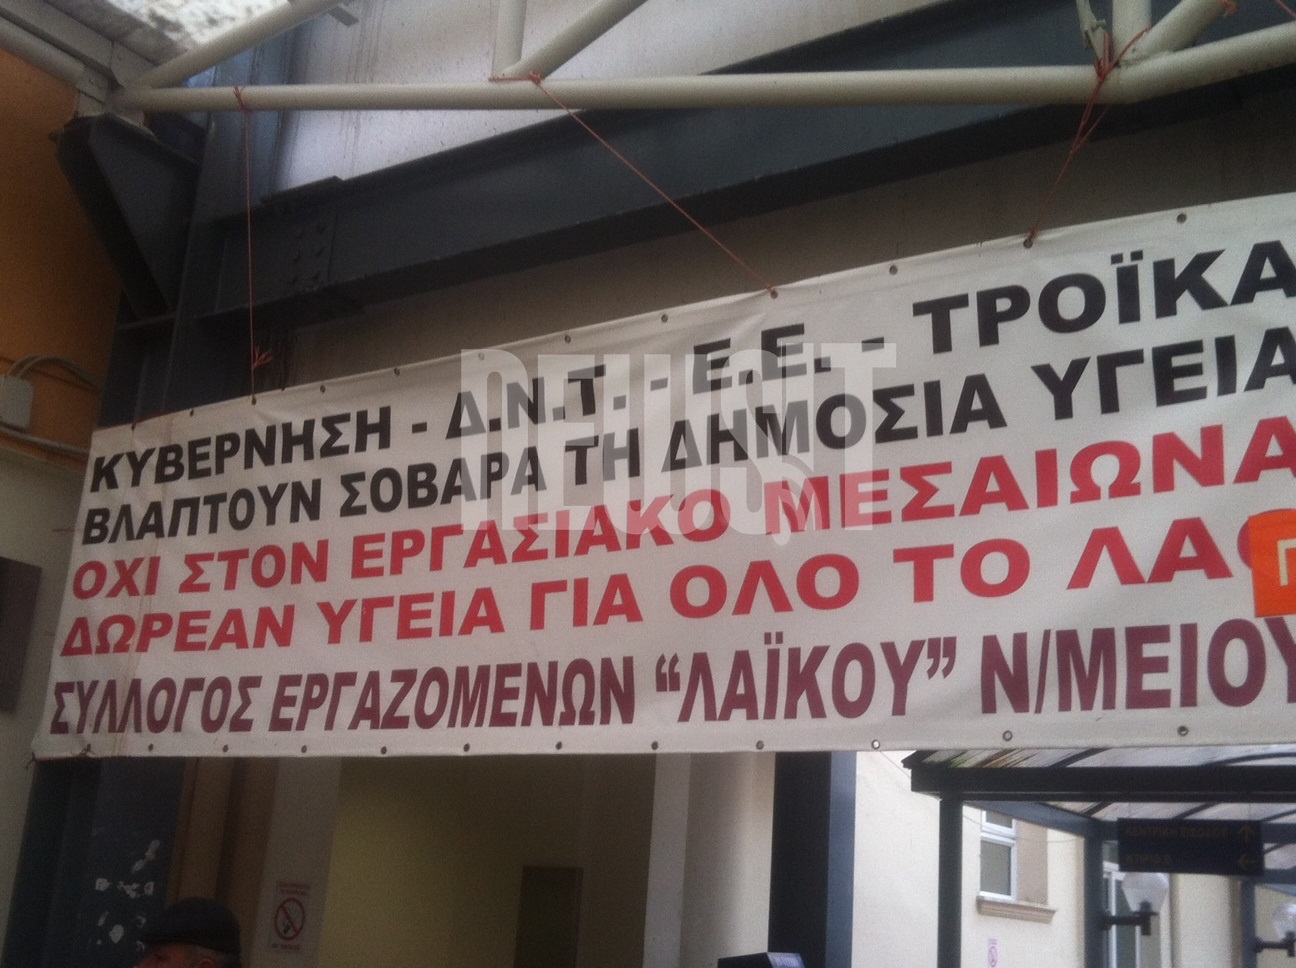 Κυβέρνηση - ΔΝΤ - Ε.Ε - Τρόϊκα βλάπτουν σοβαρά την υγεία λέει το πανό που έχουν αναρτήσει στην είσοδο του Λαϊκού Νοσοκομείου οι εργαζόμενοι 